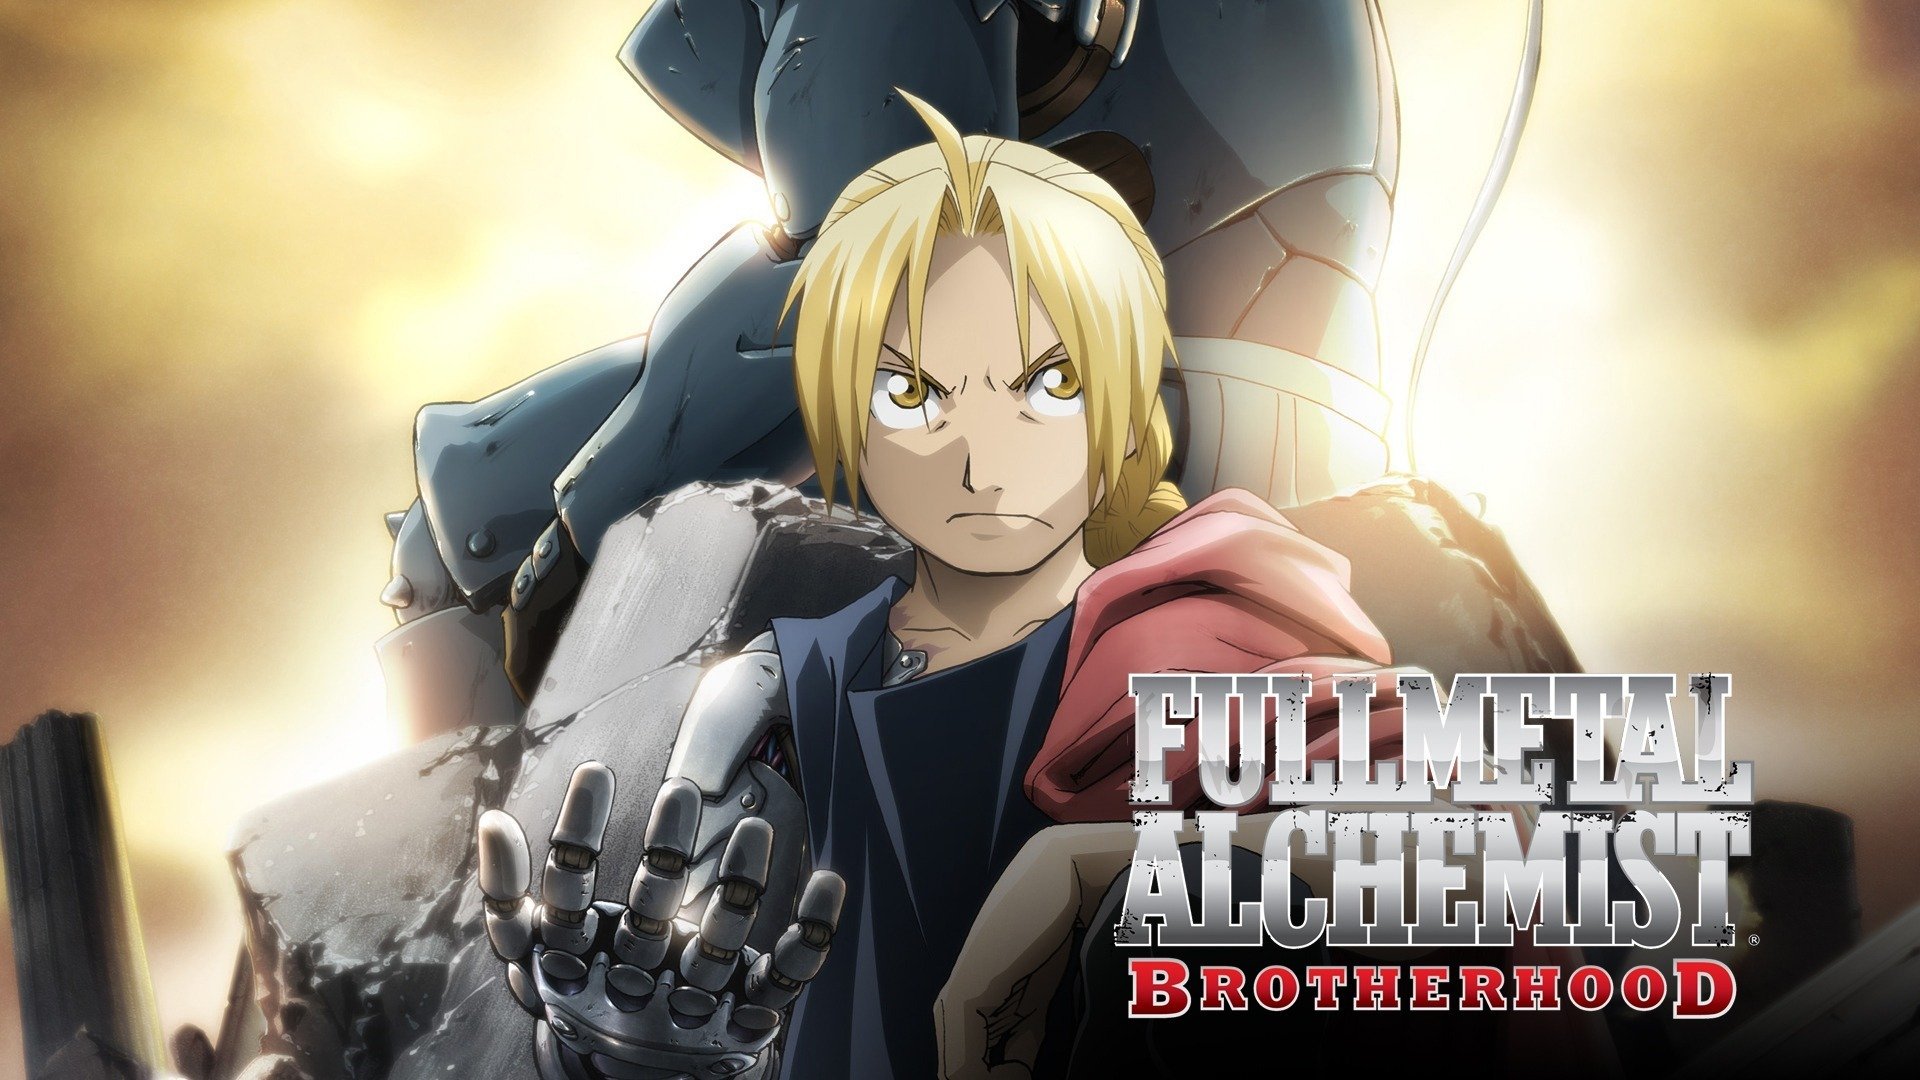 FullMetal Alchemist Brotherhood